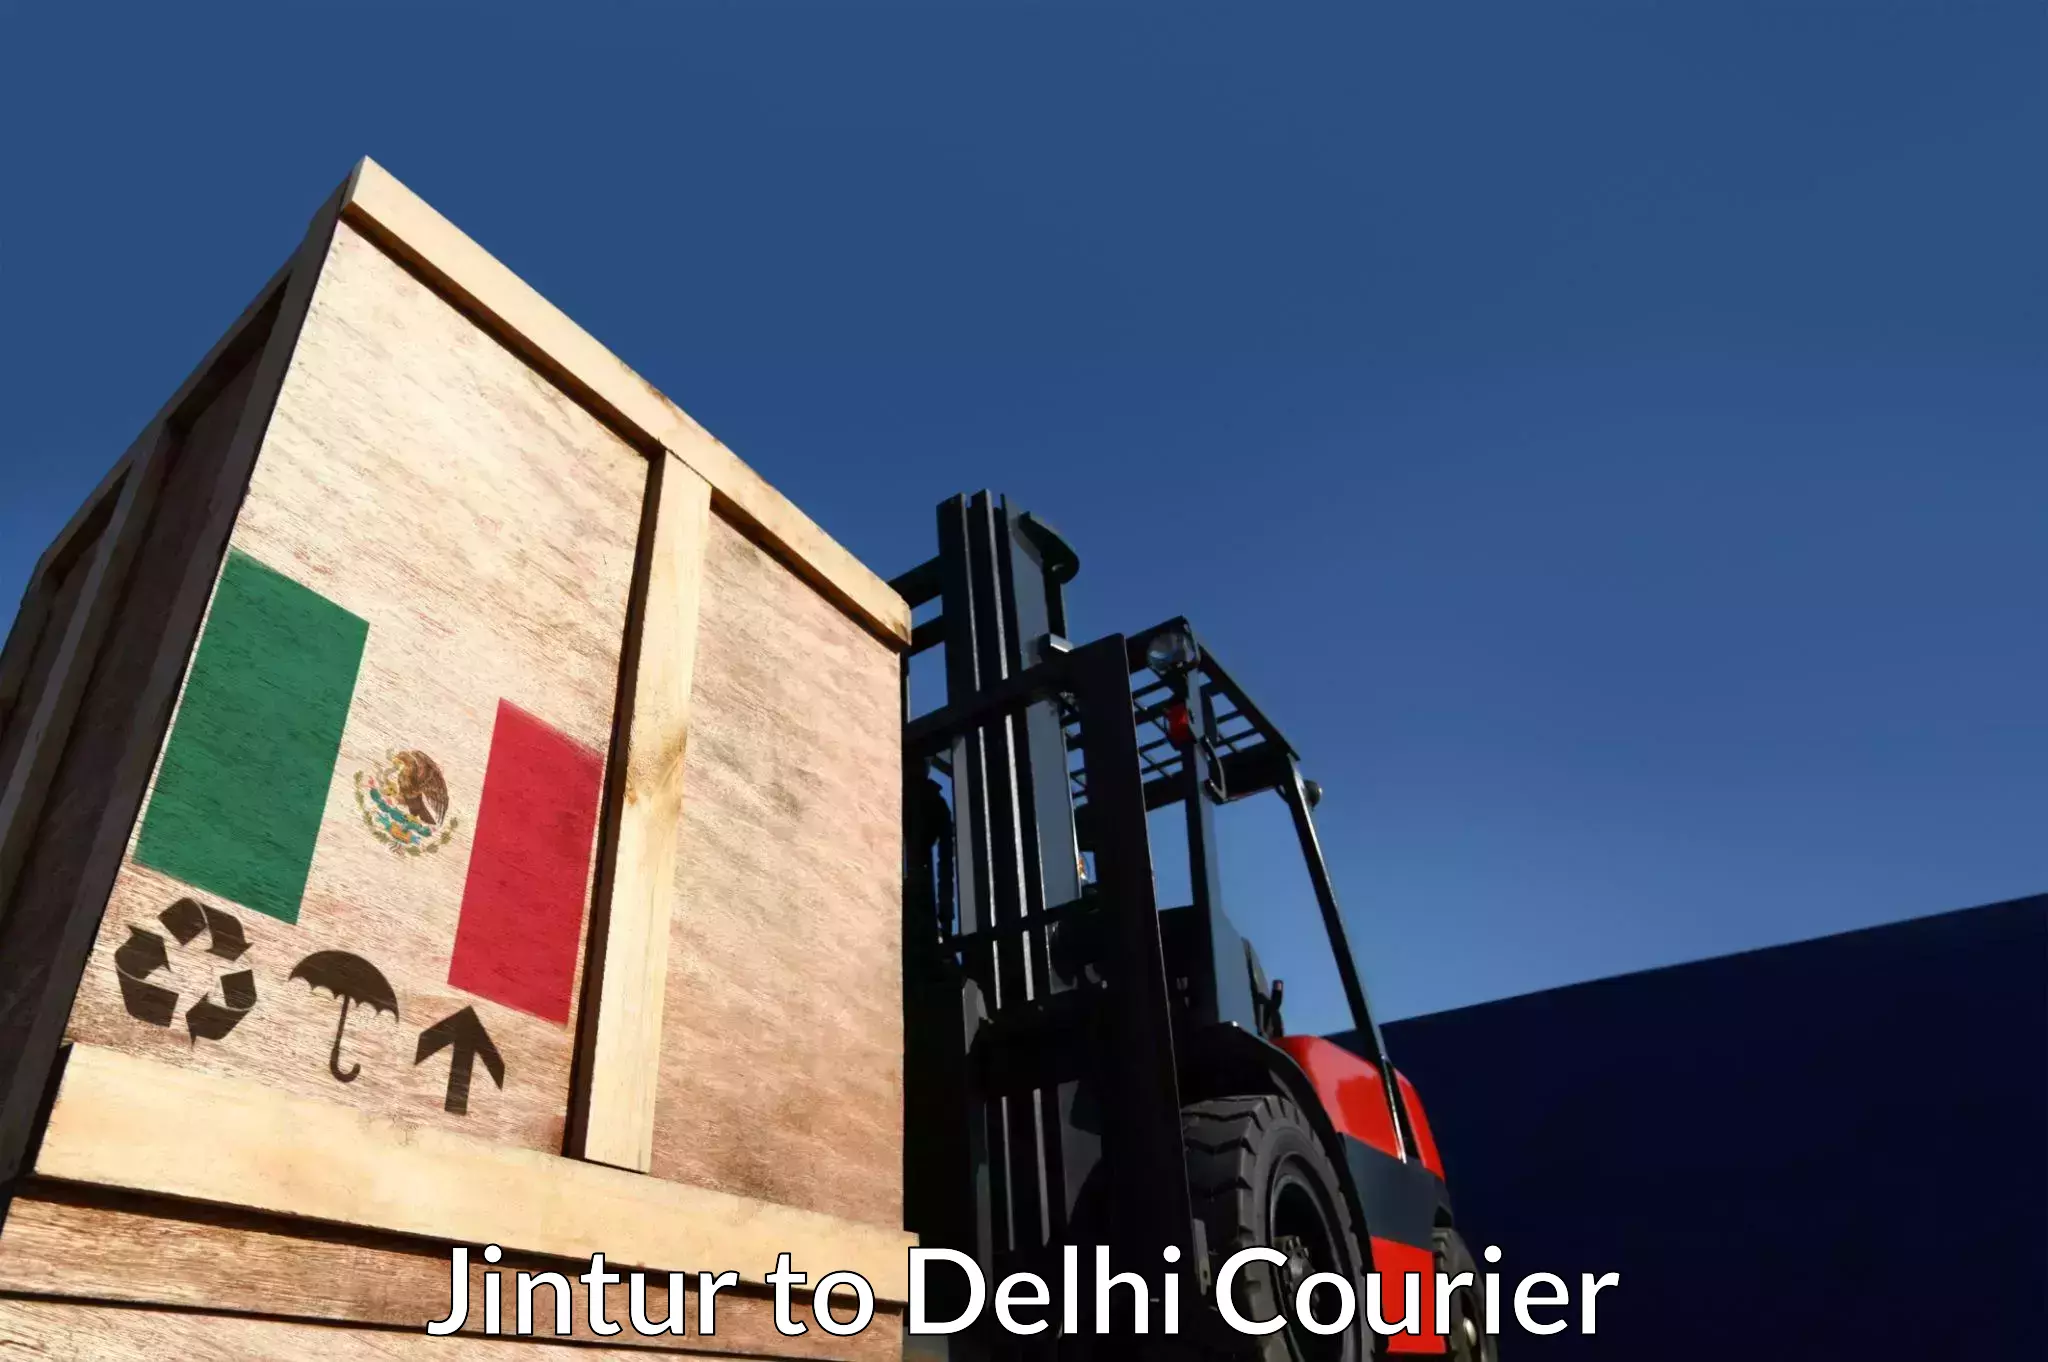 Reliable logistics providers Jintur to Delhi